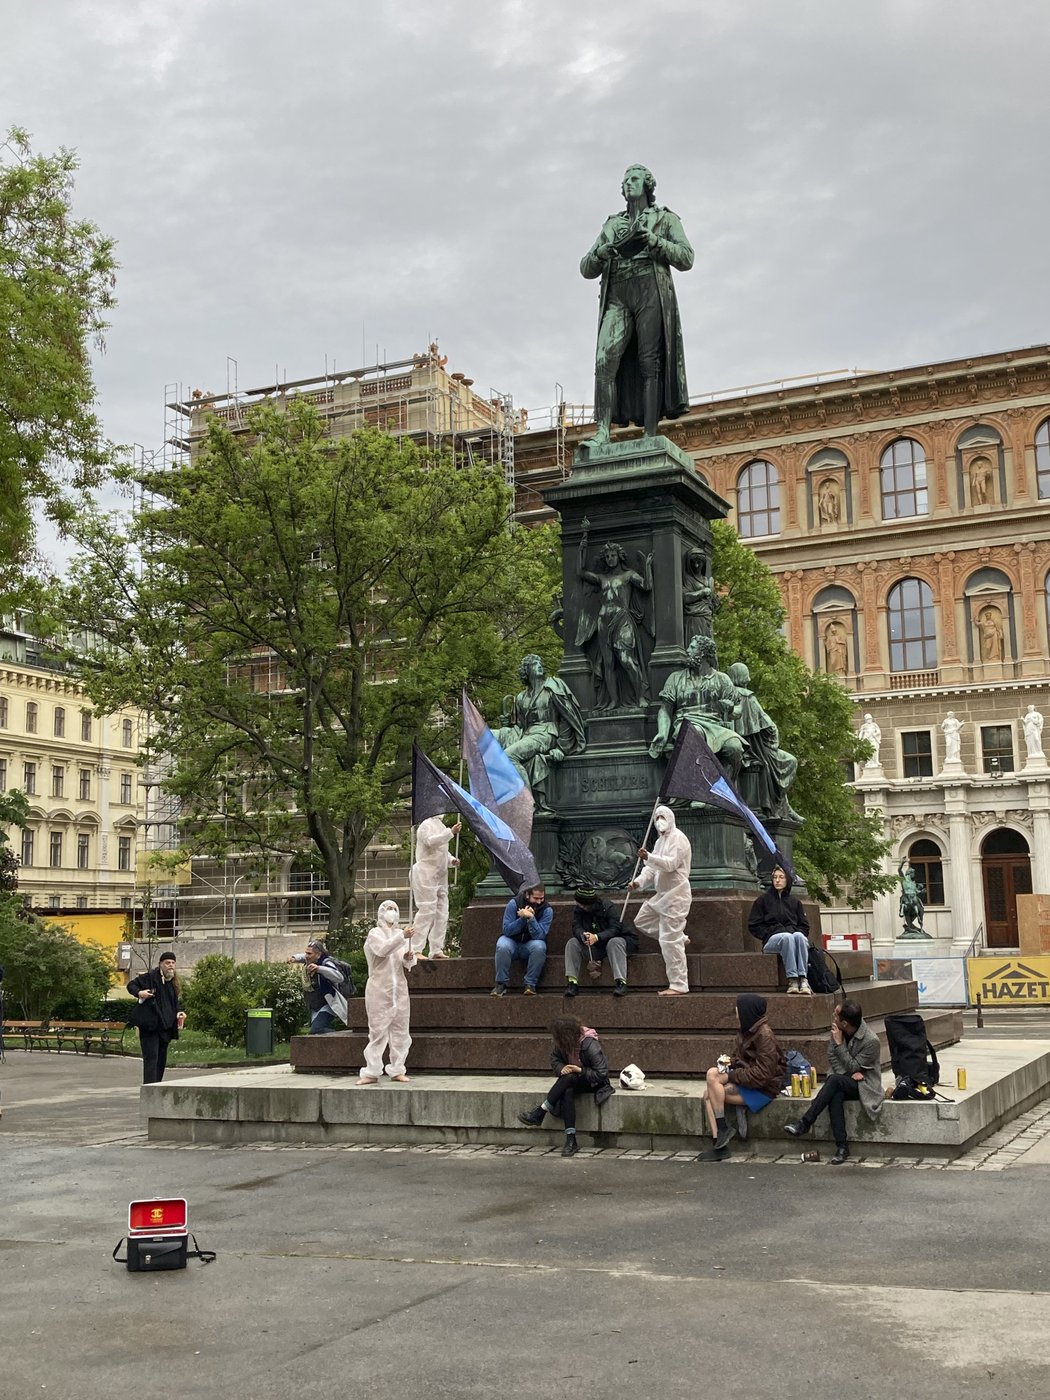 Das Bild zeigt eine Gruppe von Studierenden, die auf dem Sockel des Schillerdenkmales sitzen. Drei von ihnen haben weiße Anzüge und FFP2 Masken an, sie tragen schwarze Fahnen mit einem blauen Zeichen.